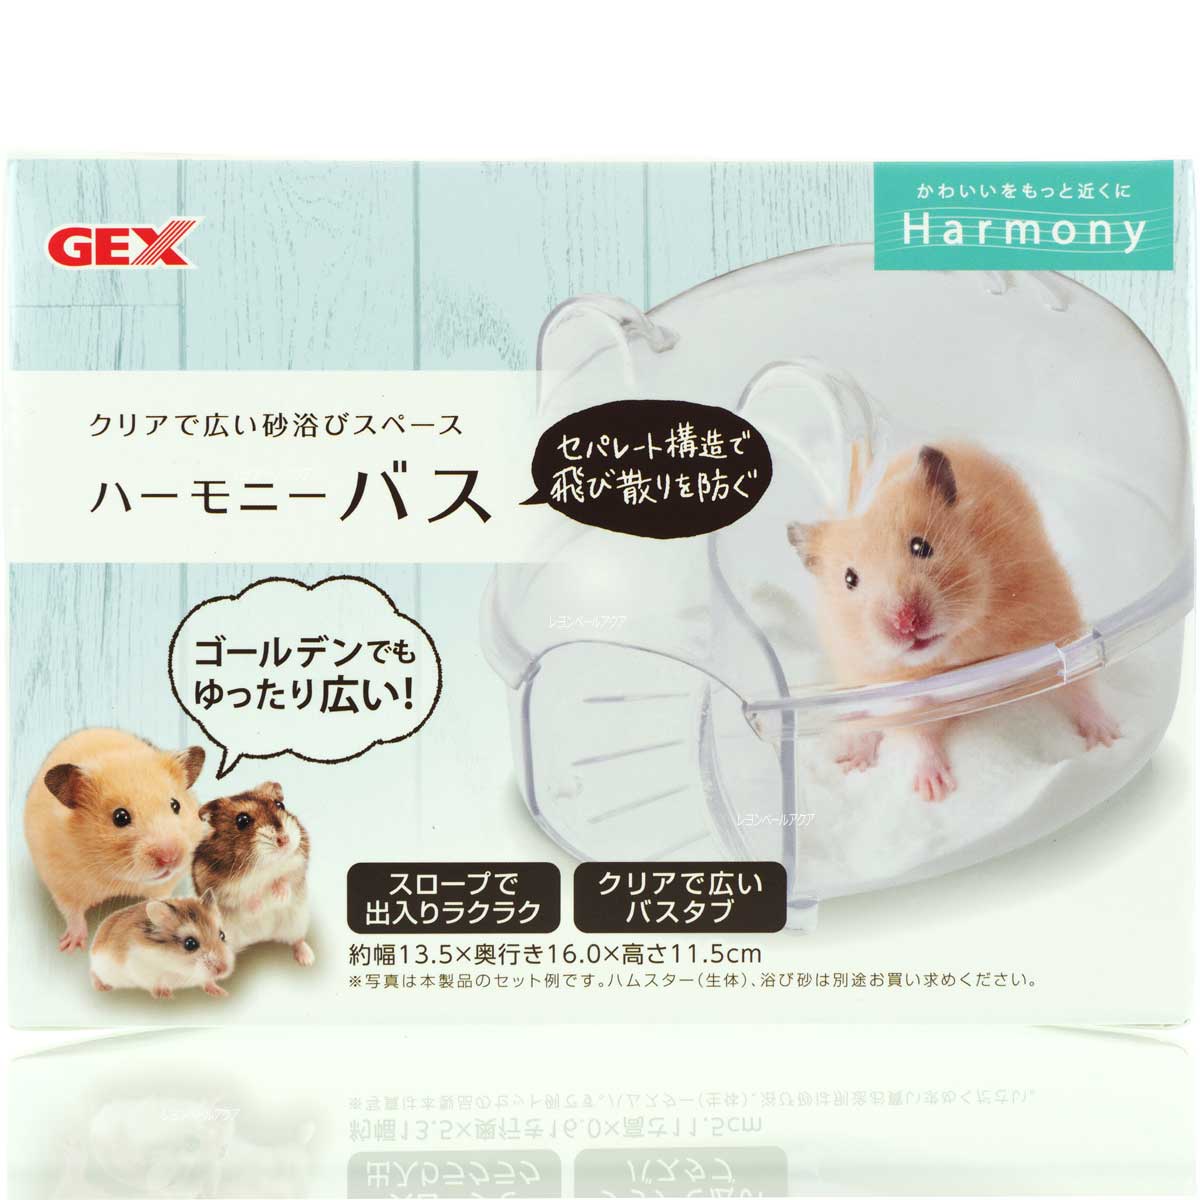 【全国送料無料】GEX ハーモニーバス